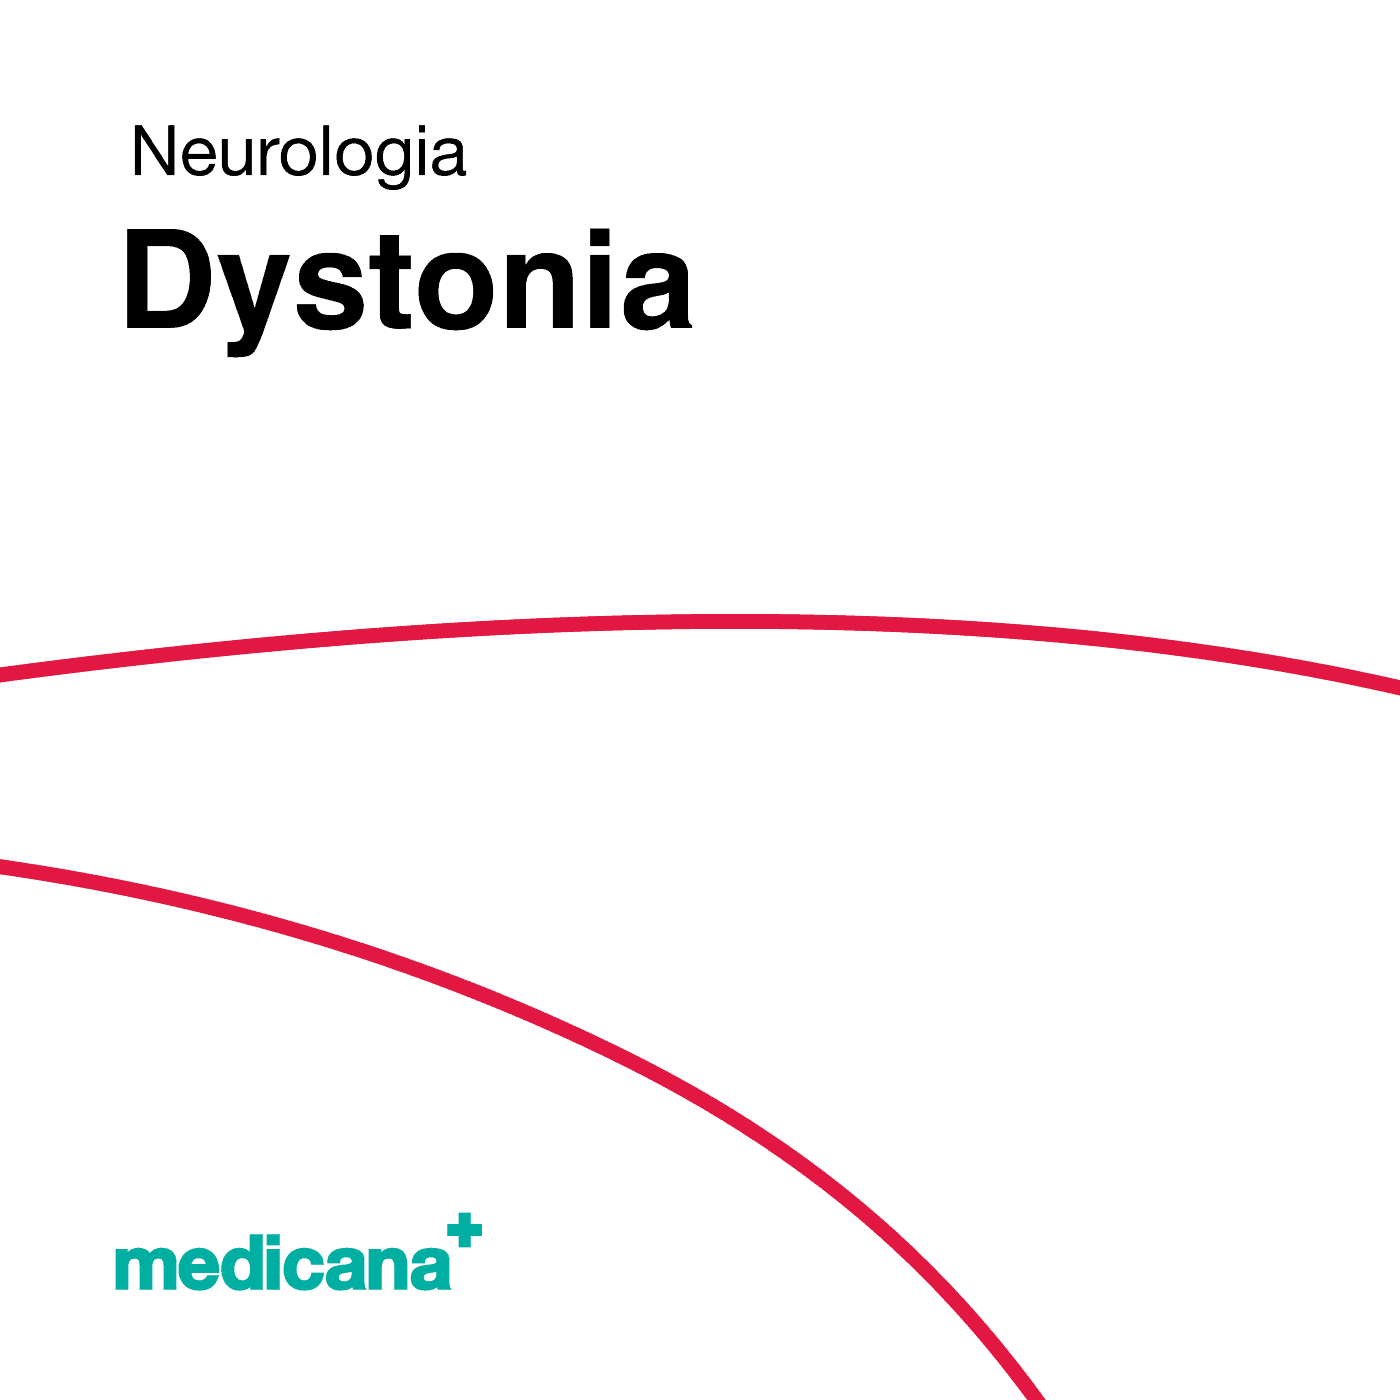 Grafika, białe tło z czerwoną kreską, czarnym napisem Neurologia - Dystonia i logo Medicana Centrum Terapii Medyczna Marihuana w lewym dolnym rogu.